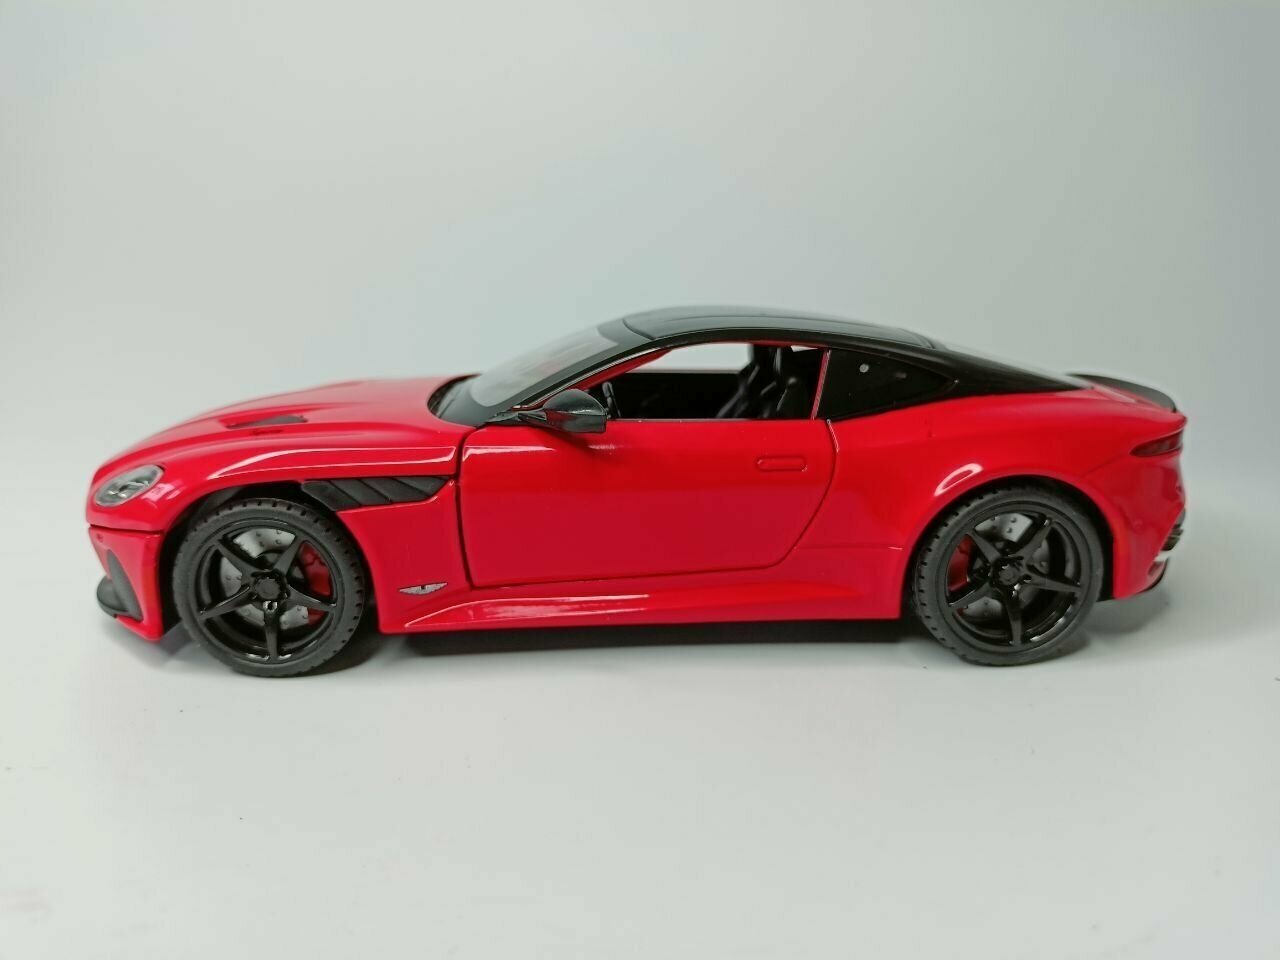 Модель автомобиля Aston Martin DieCast коллекционная металлическая игрушка масштаб 1:24 красный